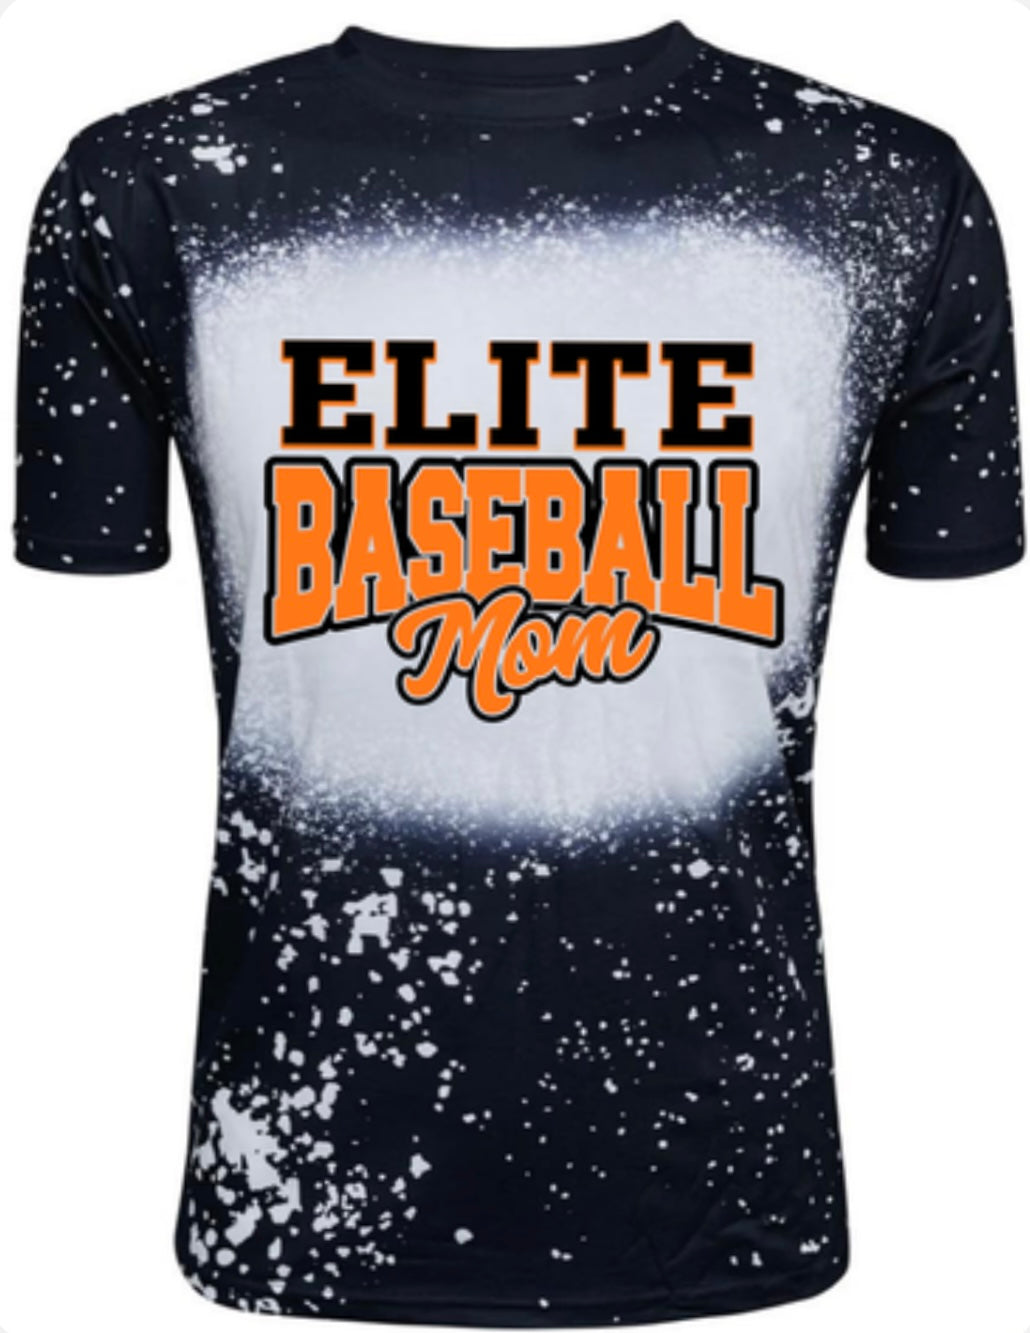 **Limited Edition** Elite Baseball Mom Bleached Tshirt